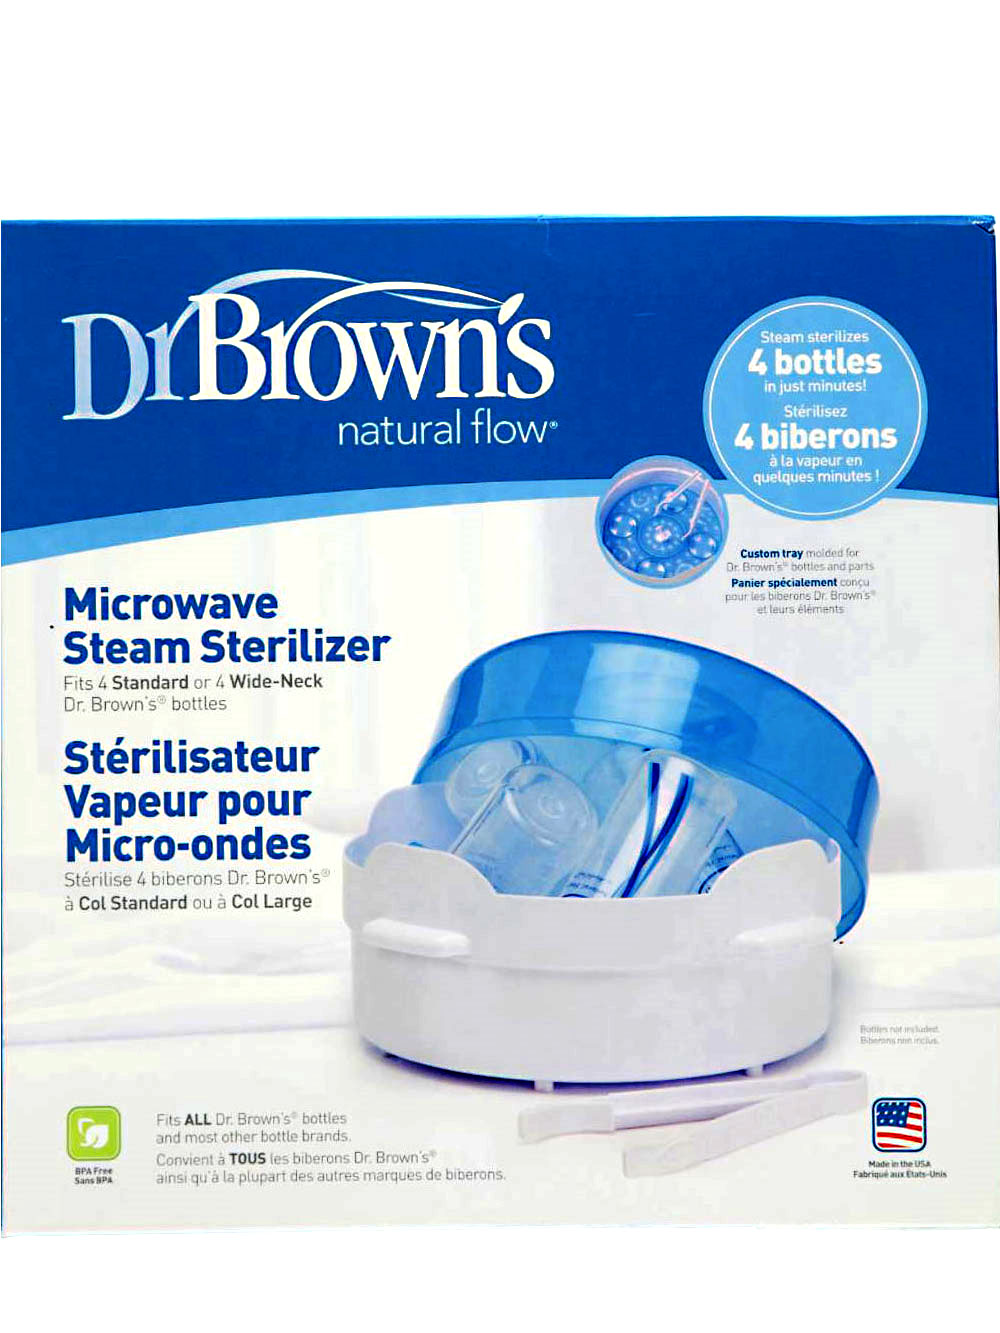 Steam Sterilizer